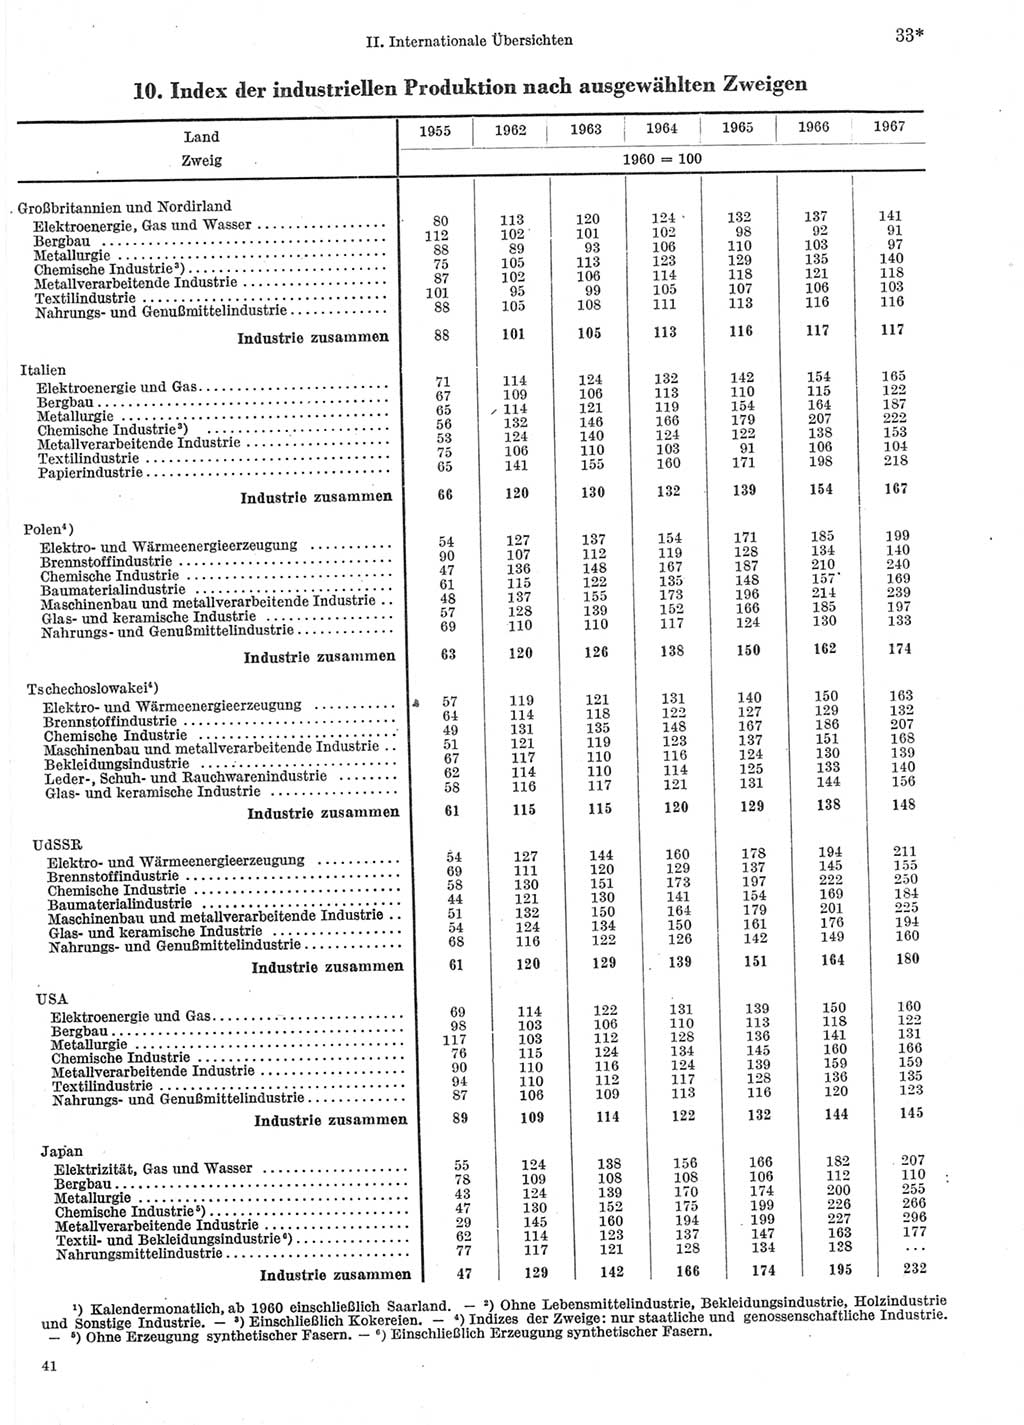 Statistisches Jahrbuch der Deutschen Demokratischen Republik (DDR) 1969, Seite 33 (Stat. Jb. DDR 1969, S. 33)